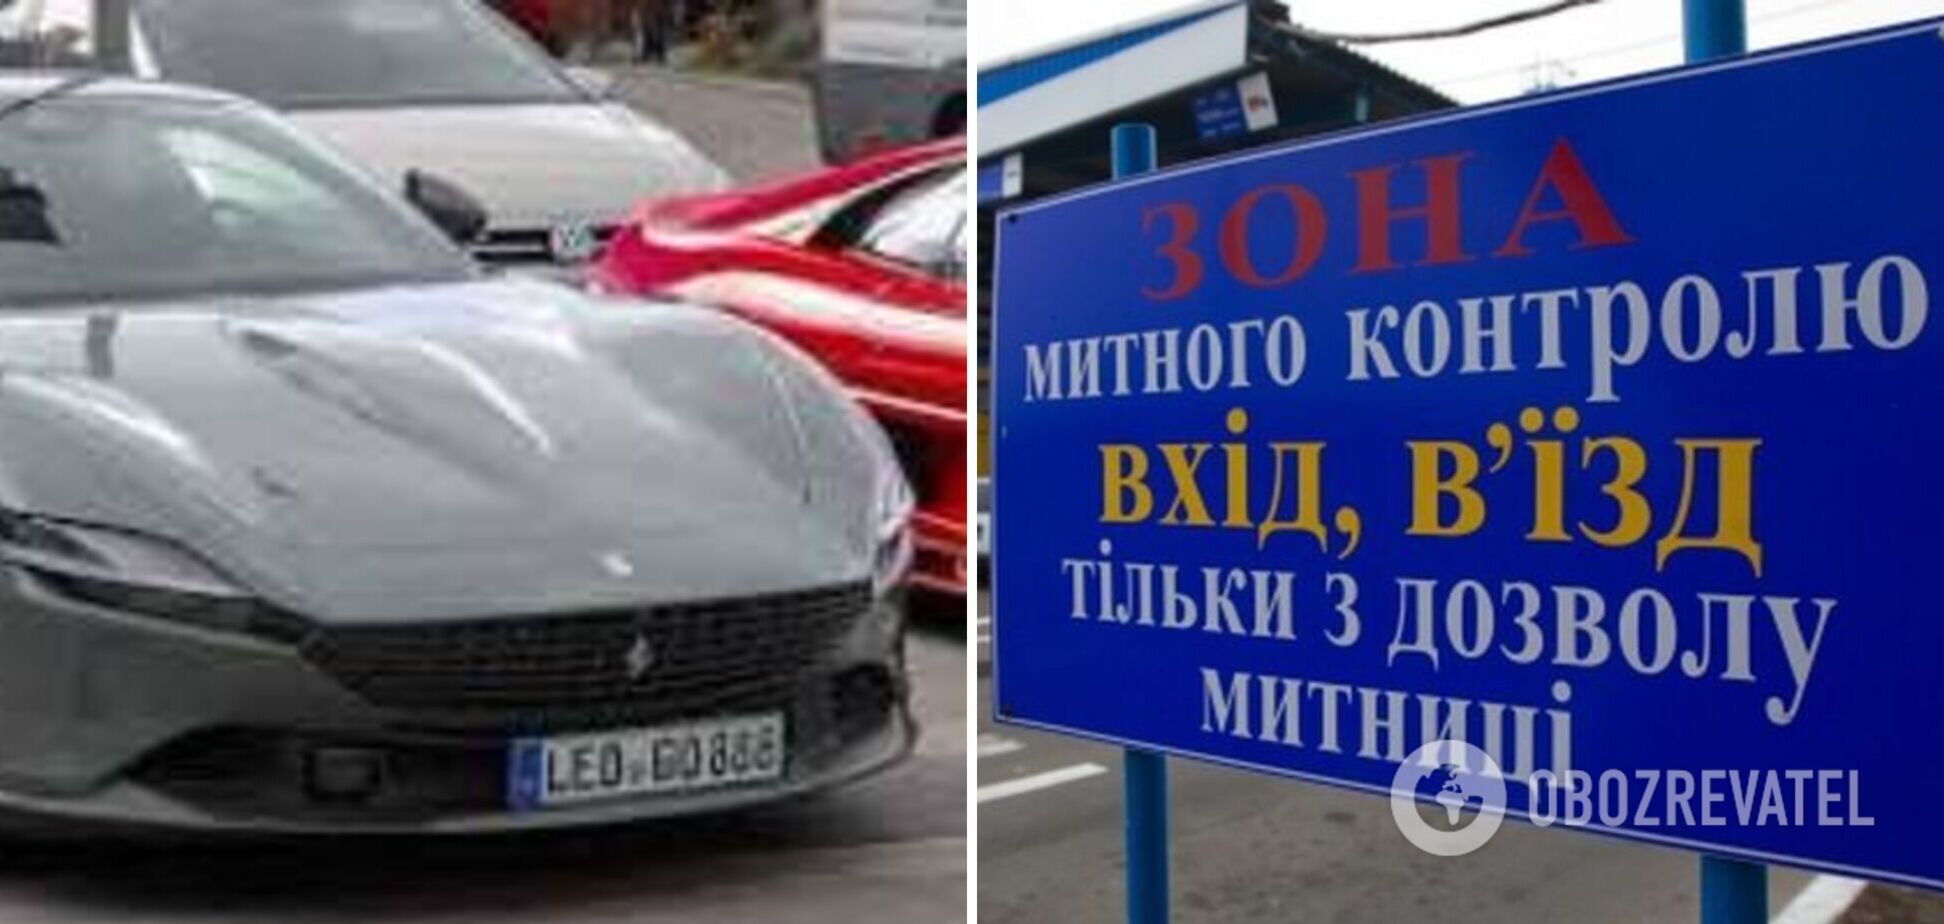 В Україну під нульовим розмитненням завезли авто за 221 тис. доларів